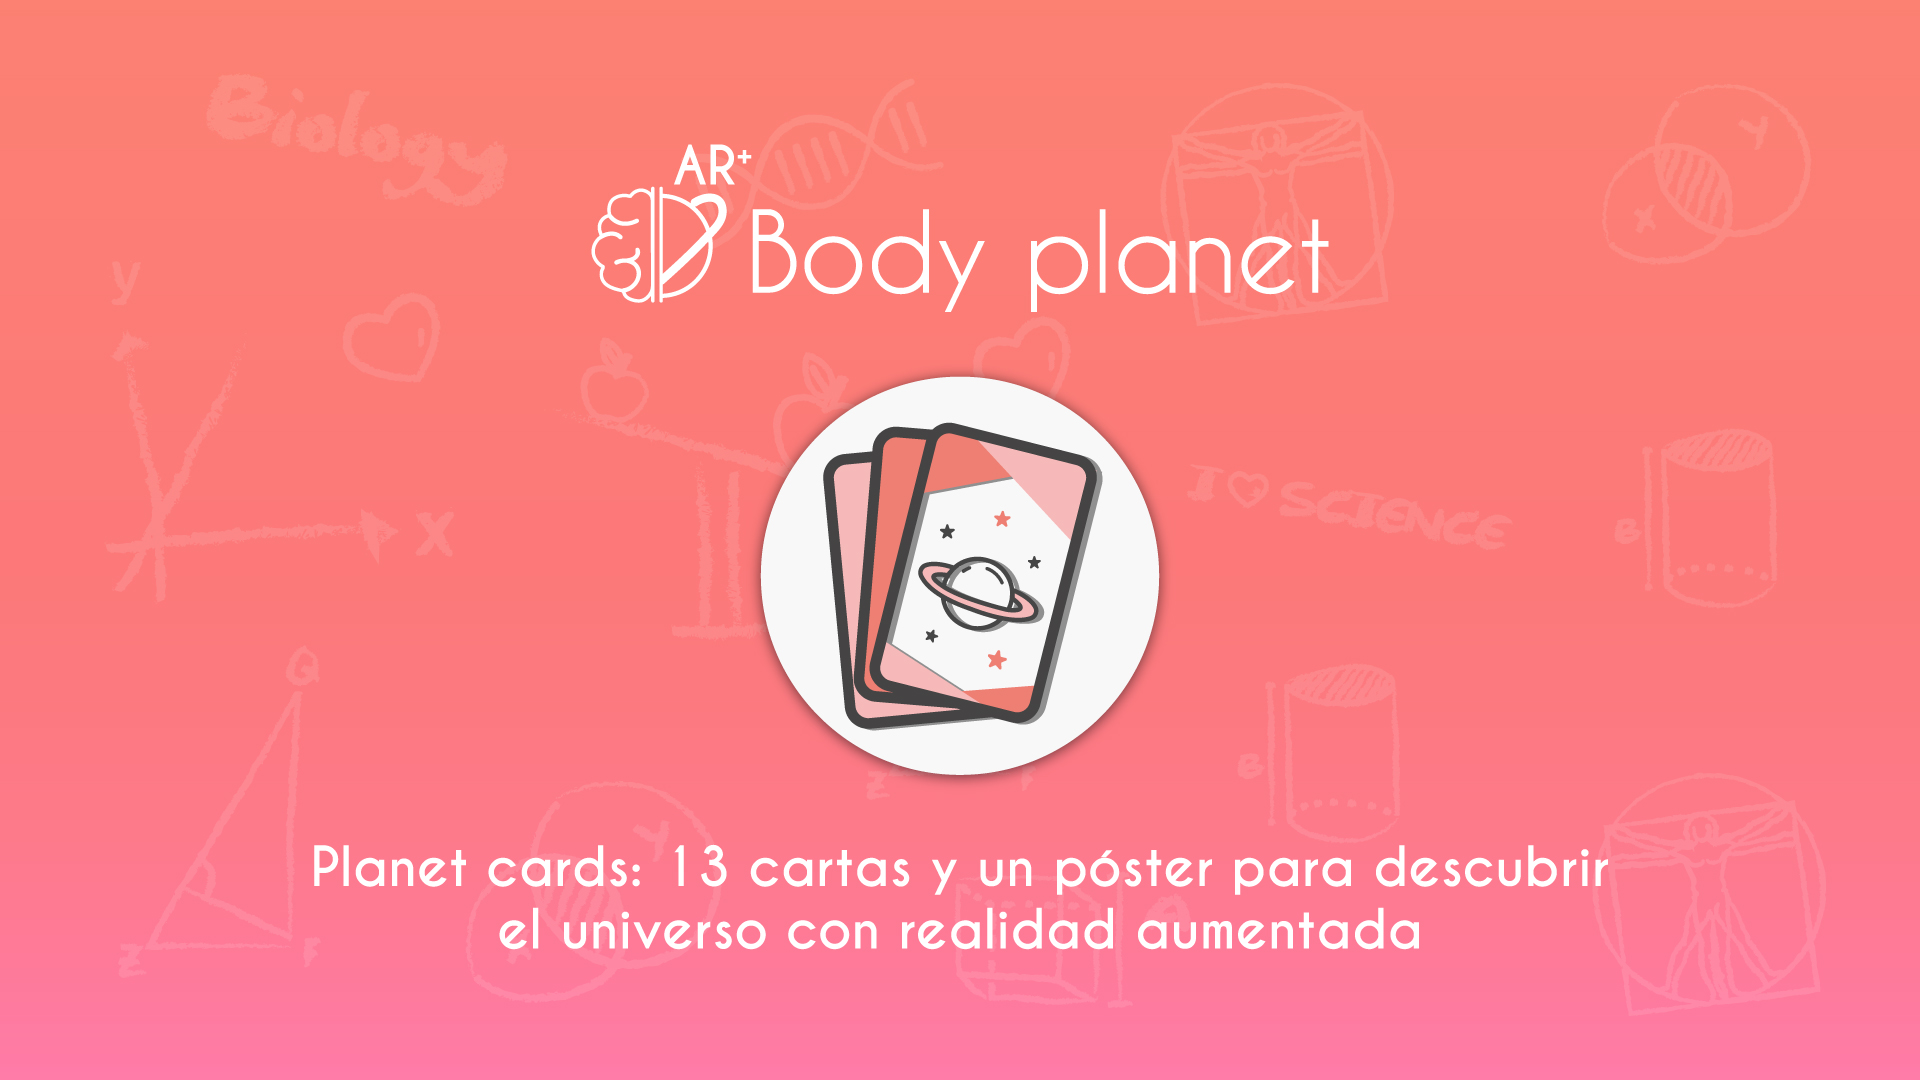 AR+ Body Planet: Planet Cards, Cartas educativas del Espacio con Realidad Aumentada - video poster